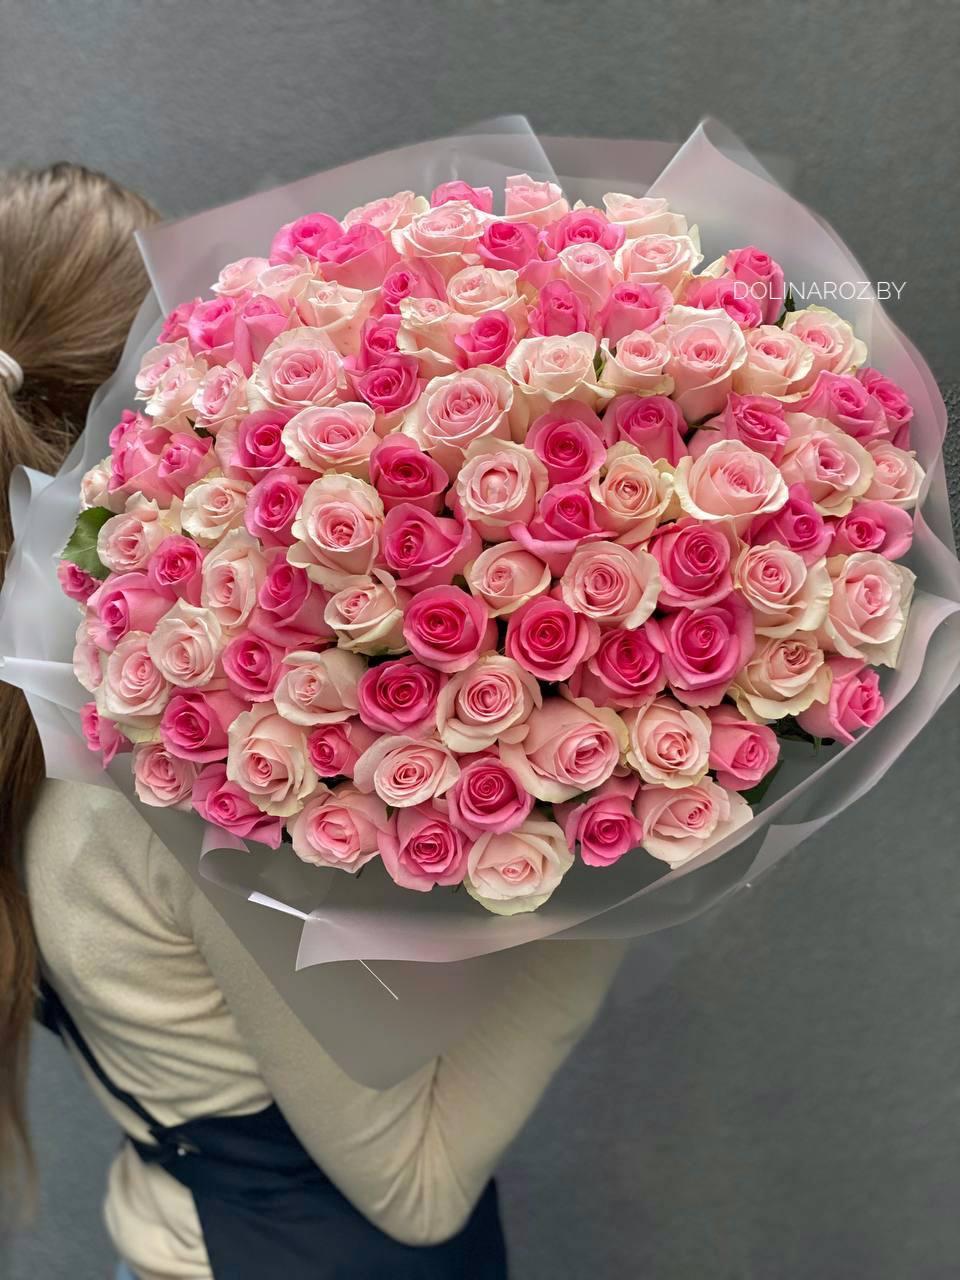 Bouquet of roses "Valegio"